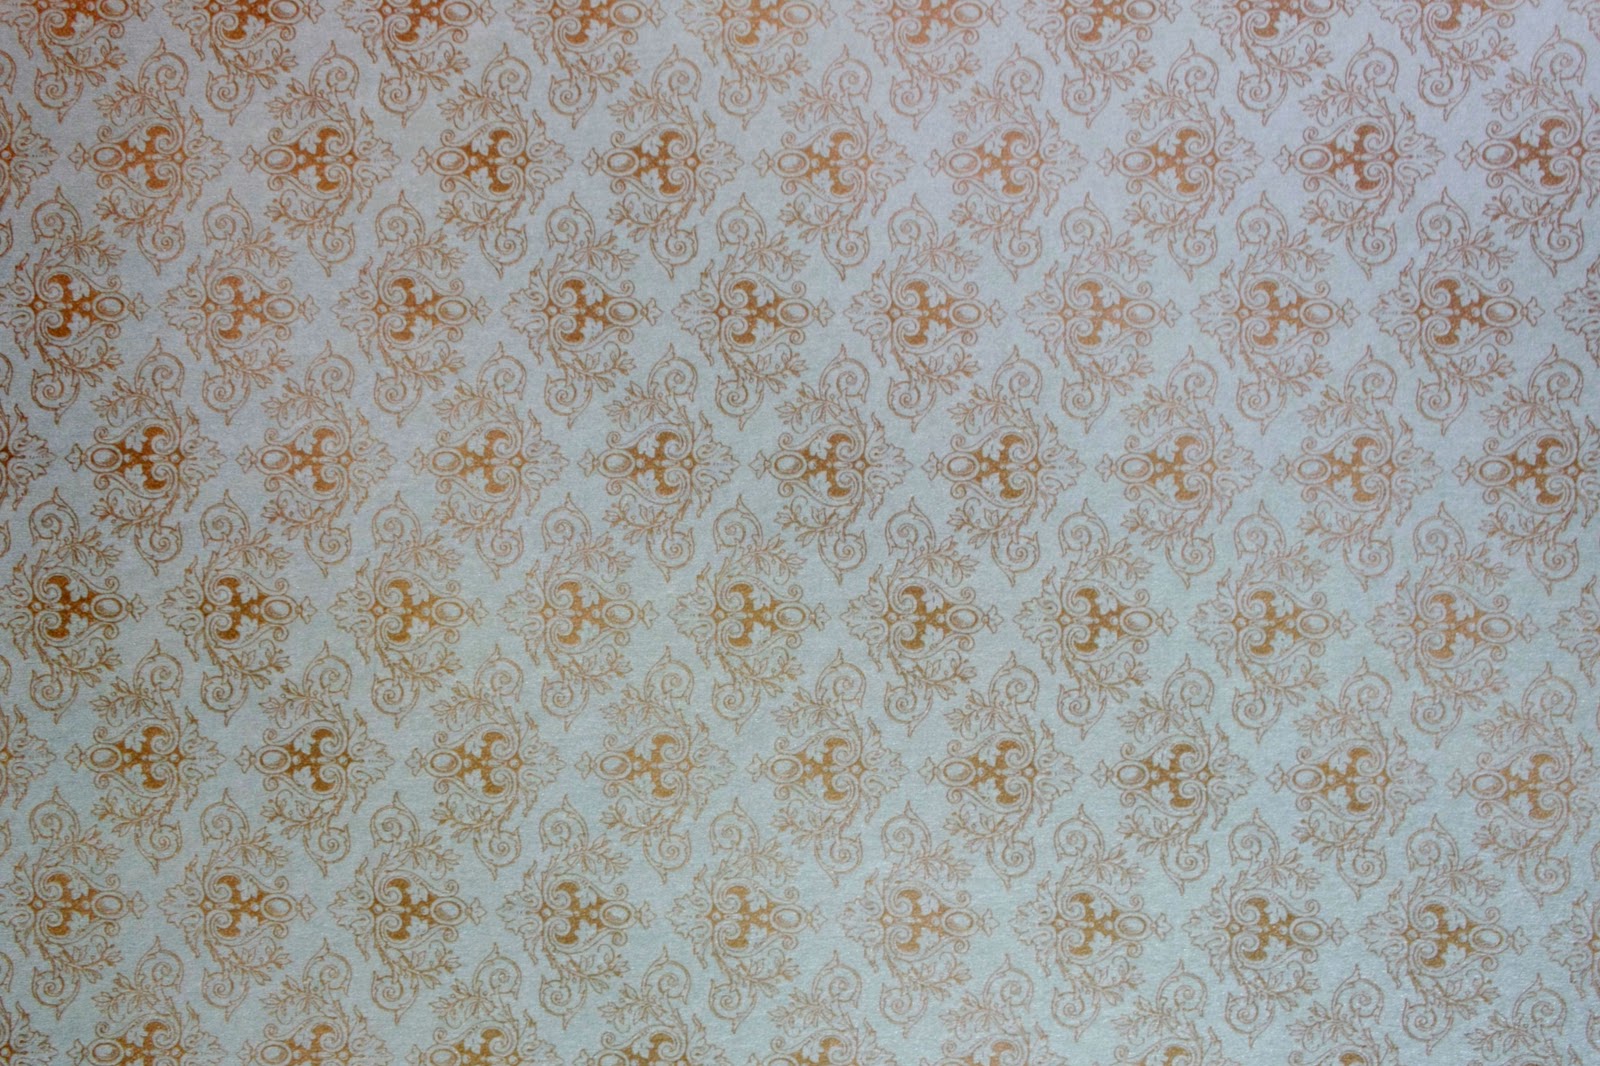 Wunderkammer Wallpaper Patterns